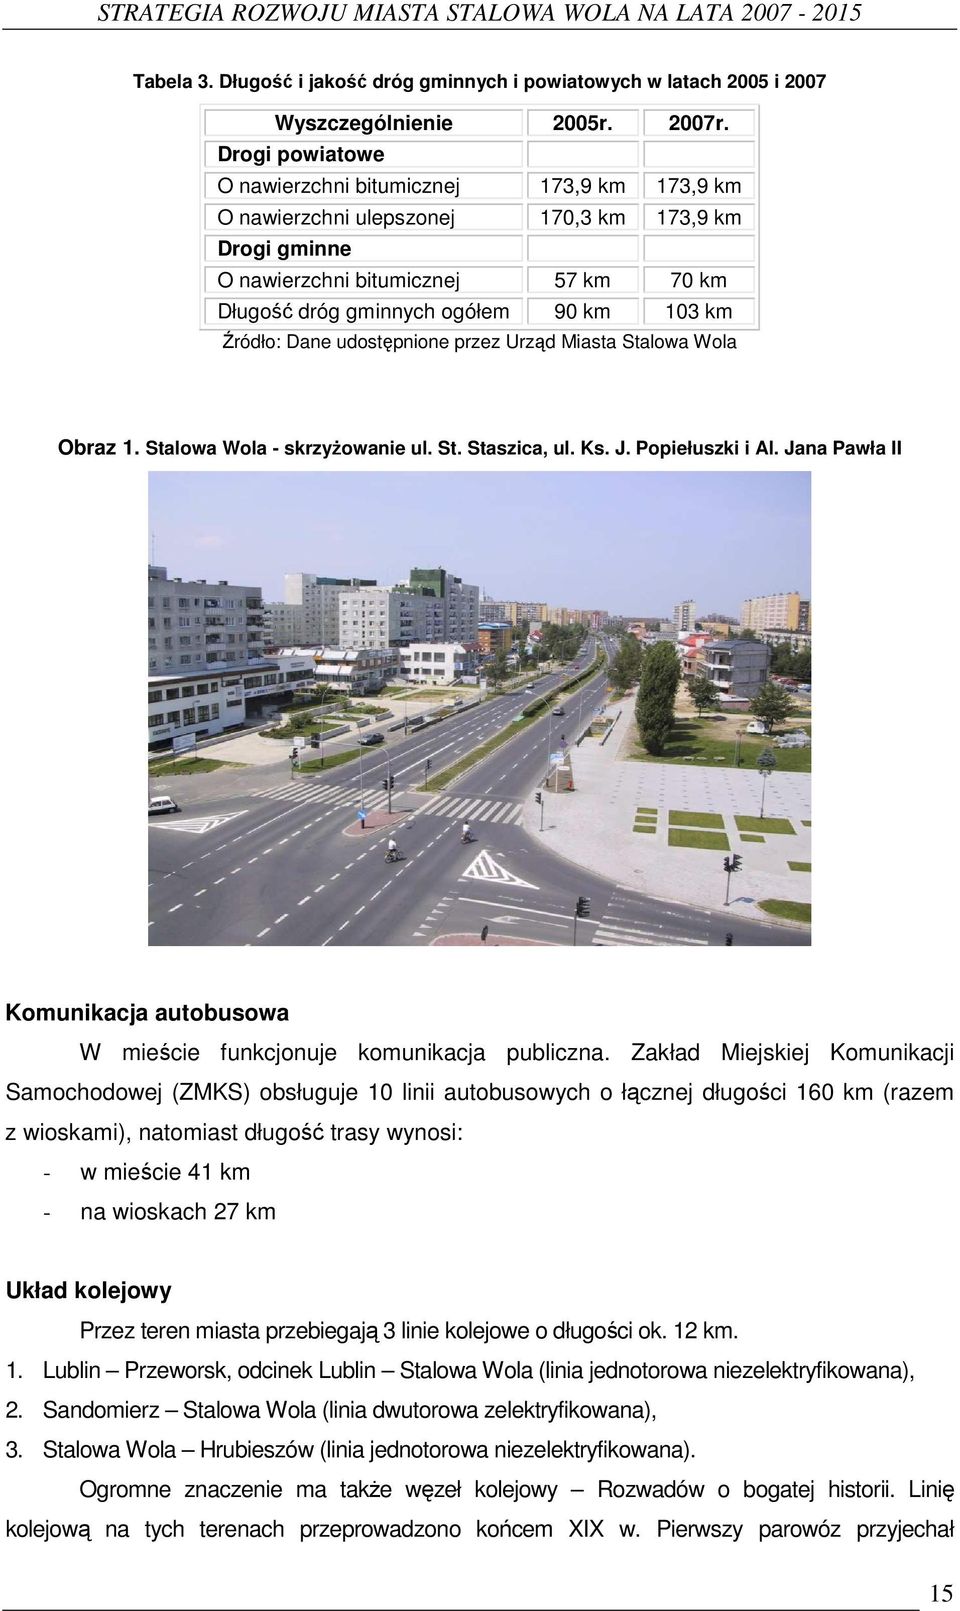 Źródło: Dane udostępnione przez Urząd Miasta Stalowa Wola Obraz 1. Stalowa Wola - skrzyŝowanie ul. St. Staszica, ul. Ks. J. Popiełuszki i Al.